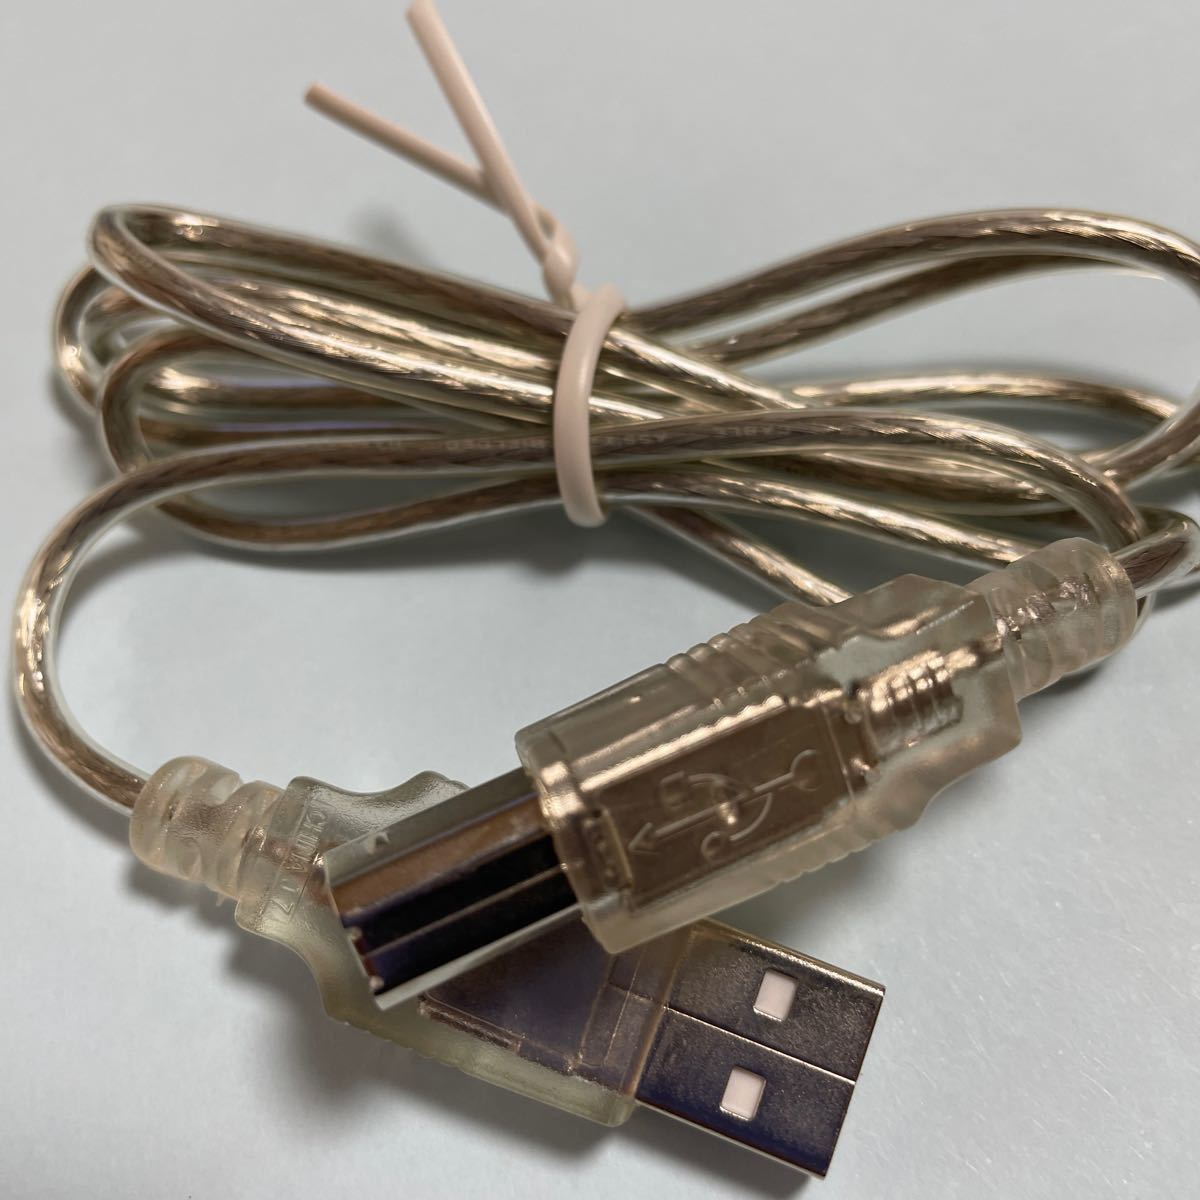 USBケーブル2.0 